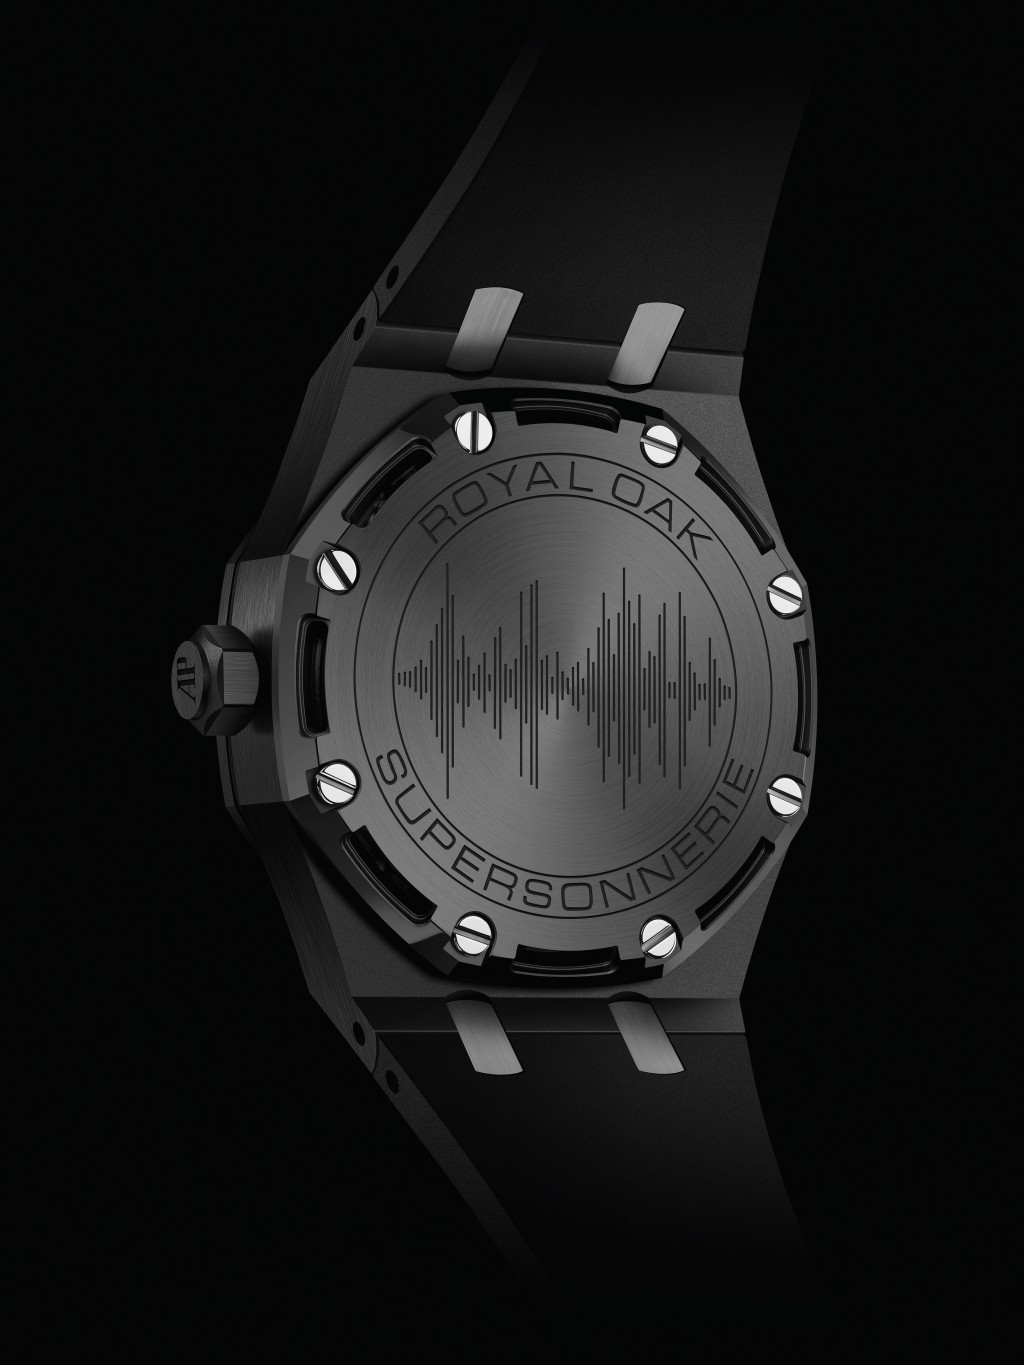 錶殼底蓋亦特別刻上音波圖案作為紀念。